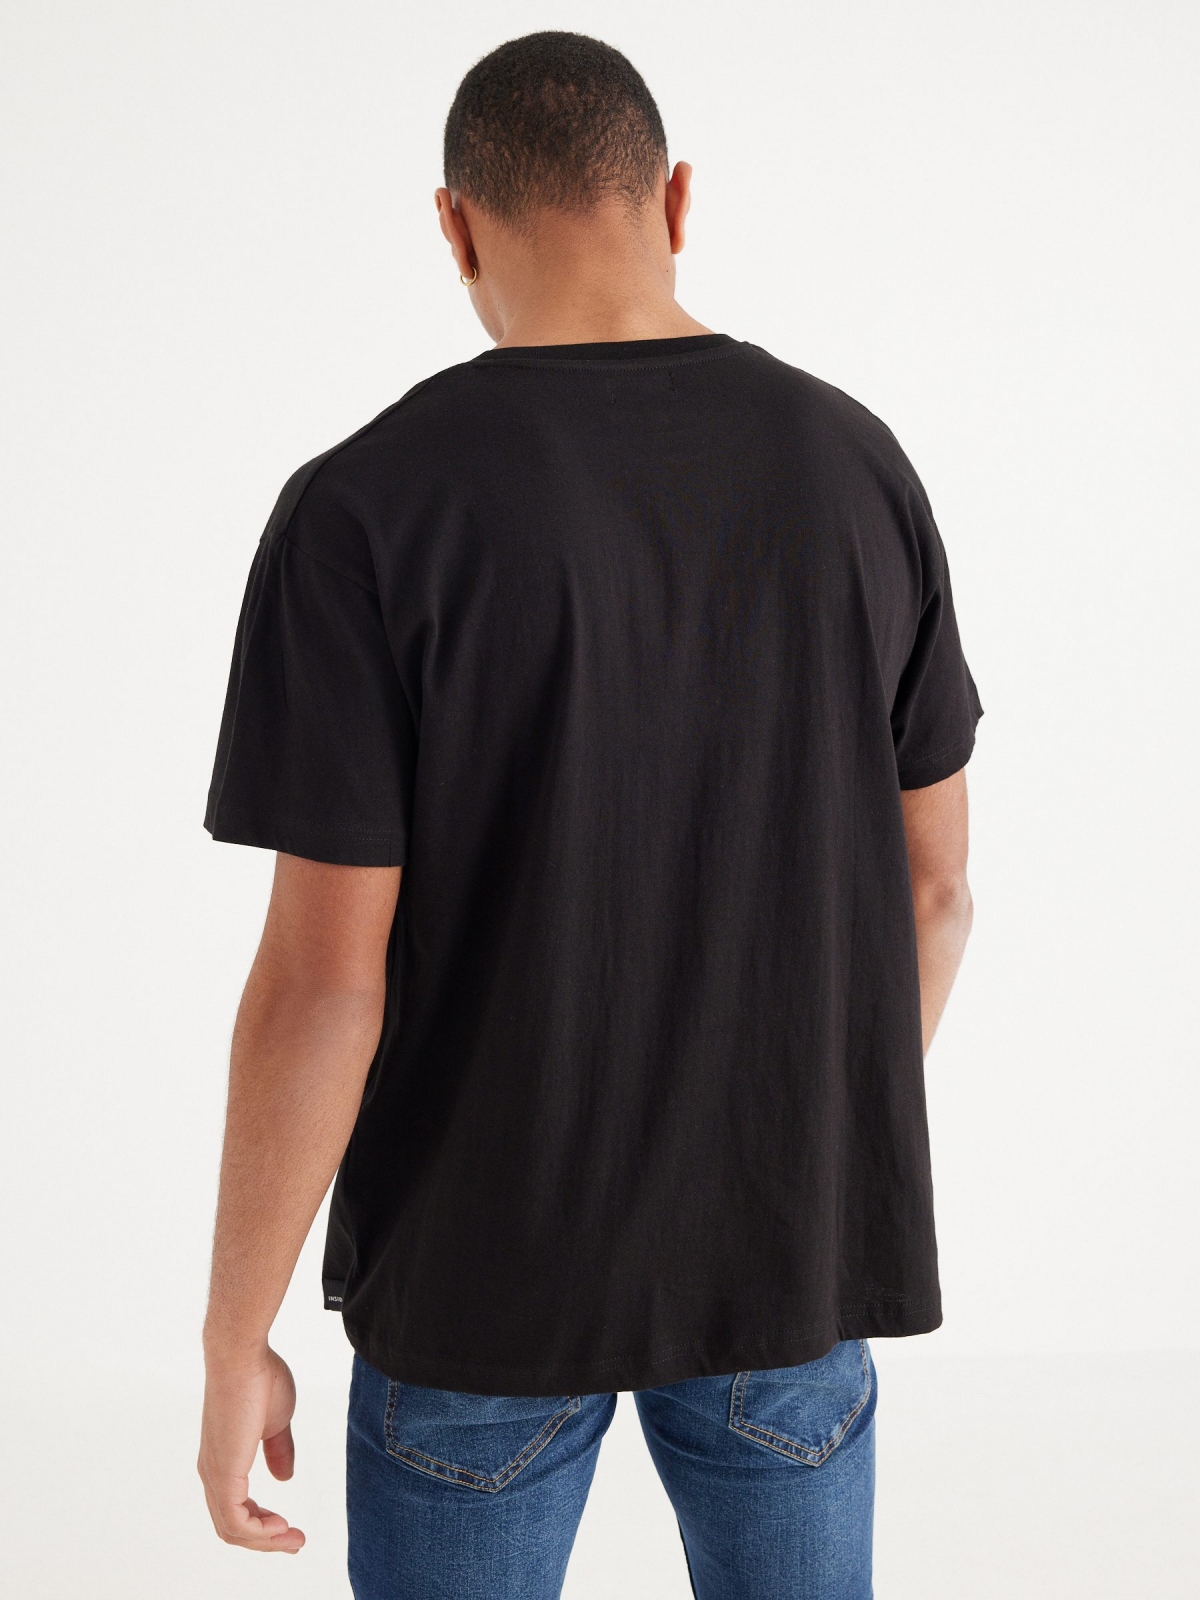 Camiseta texto contraste negro vista media trasera